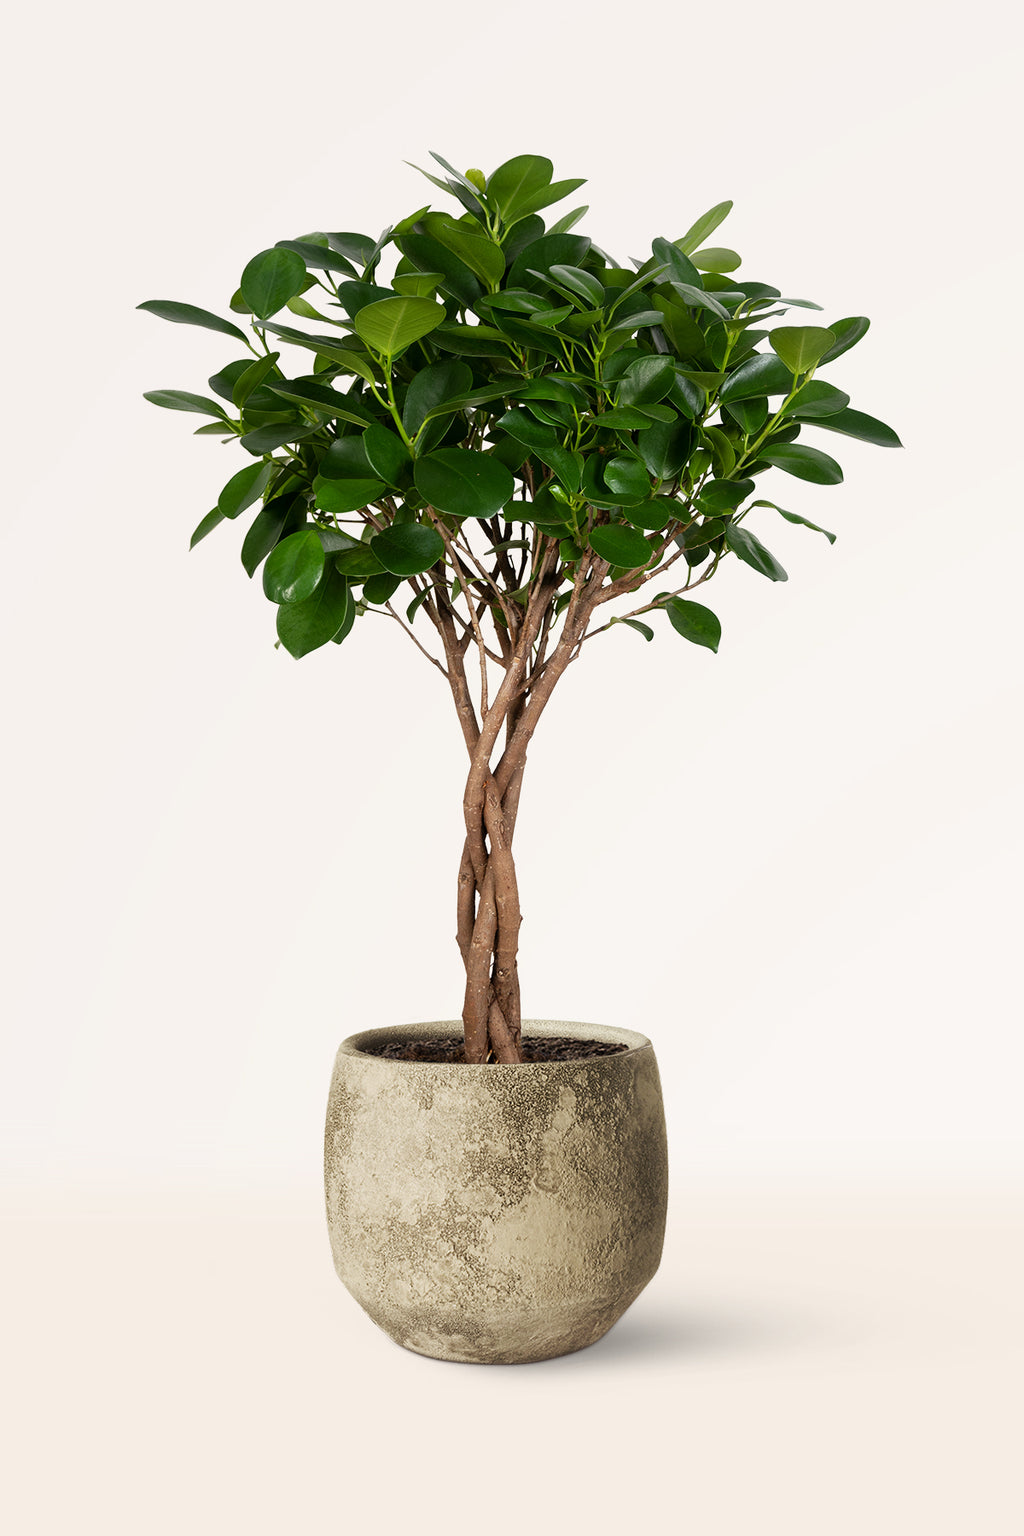 Comprar Musgo Sphagnum para plantas 5L online, April Plants